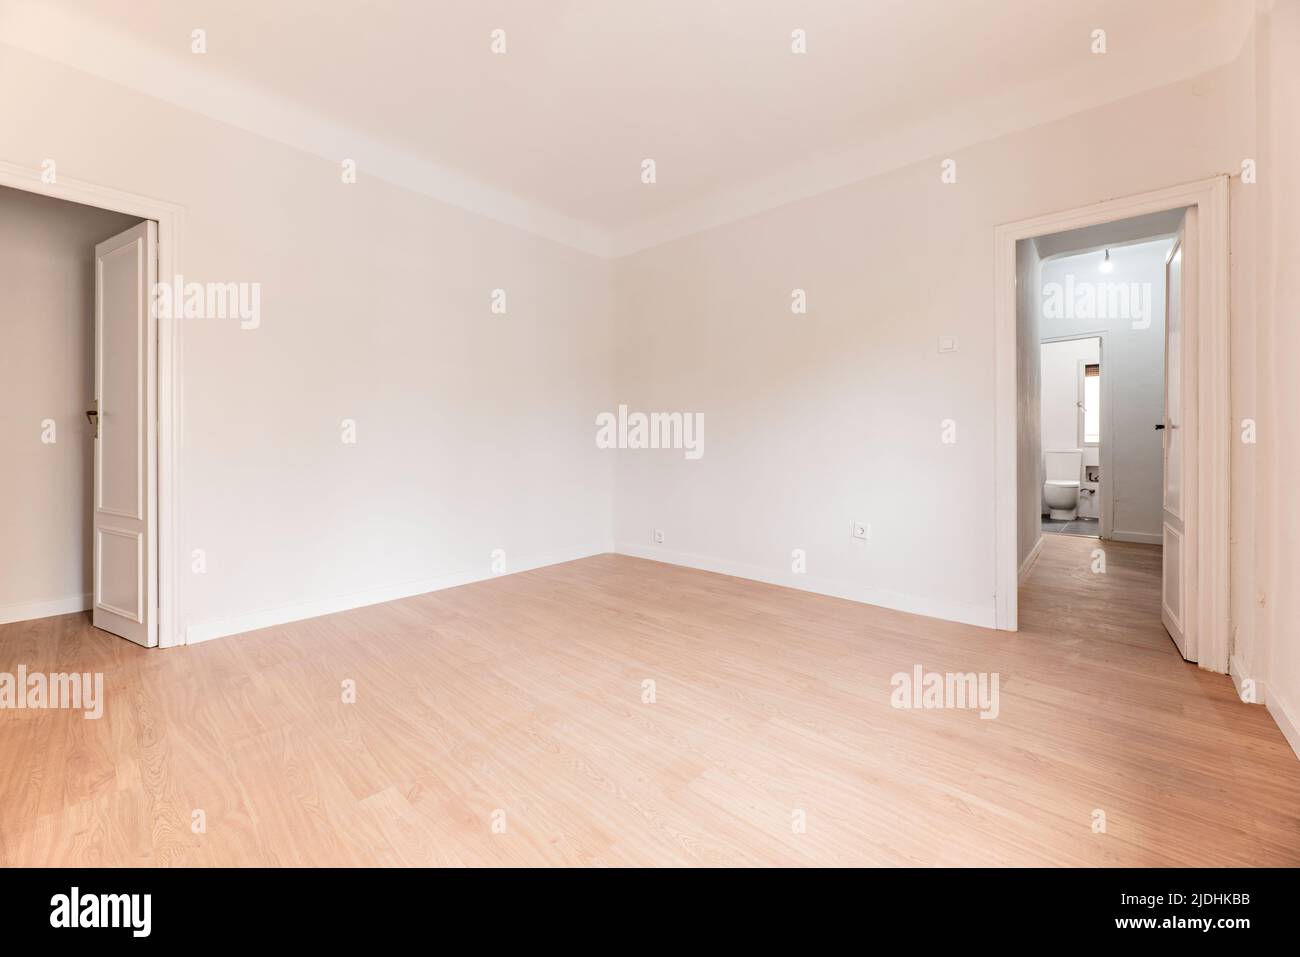 Camera vuota con pavimento in parquet di quercia, pareti dipinte di bianco e legno bianco e bagno in un'altra stanza Foto Stock